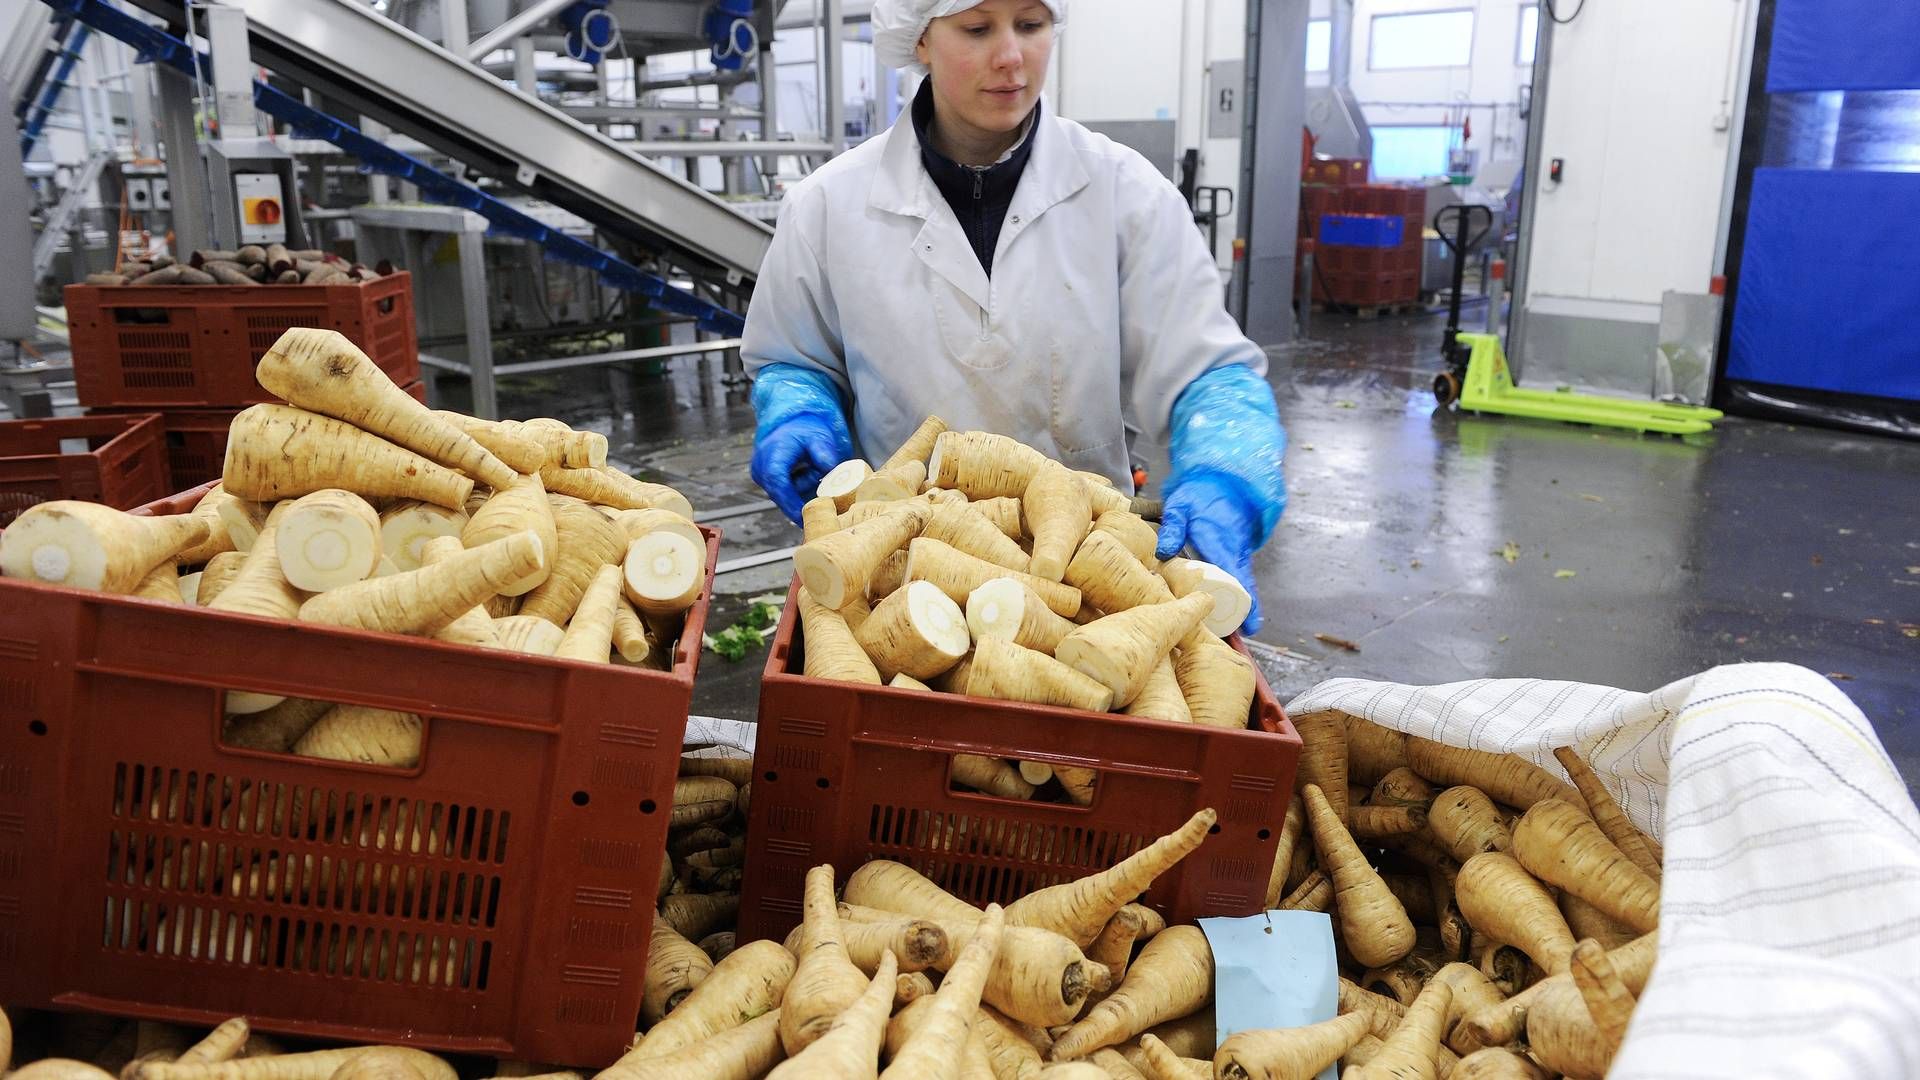 Rodfrugter og kartofler fra Lammefjorden er eftertragtede varer i supermarkeder og restauranter. | Foto: Mik Eskestad